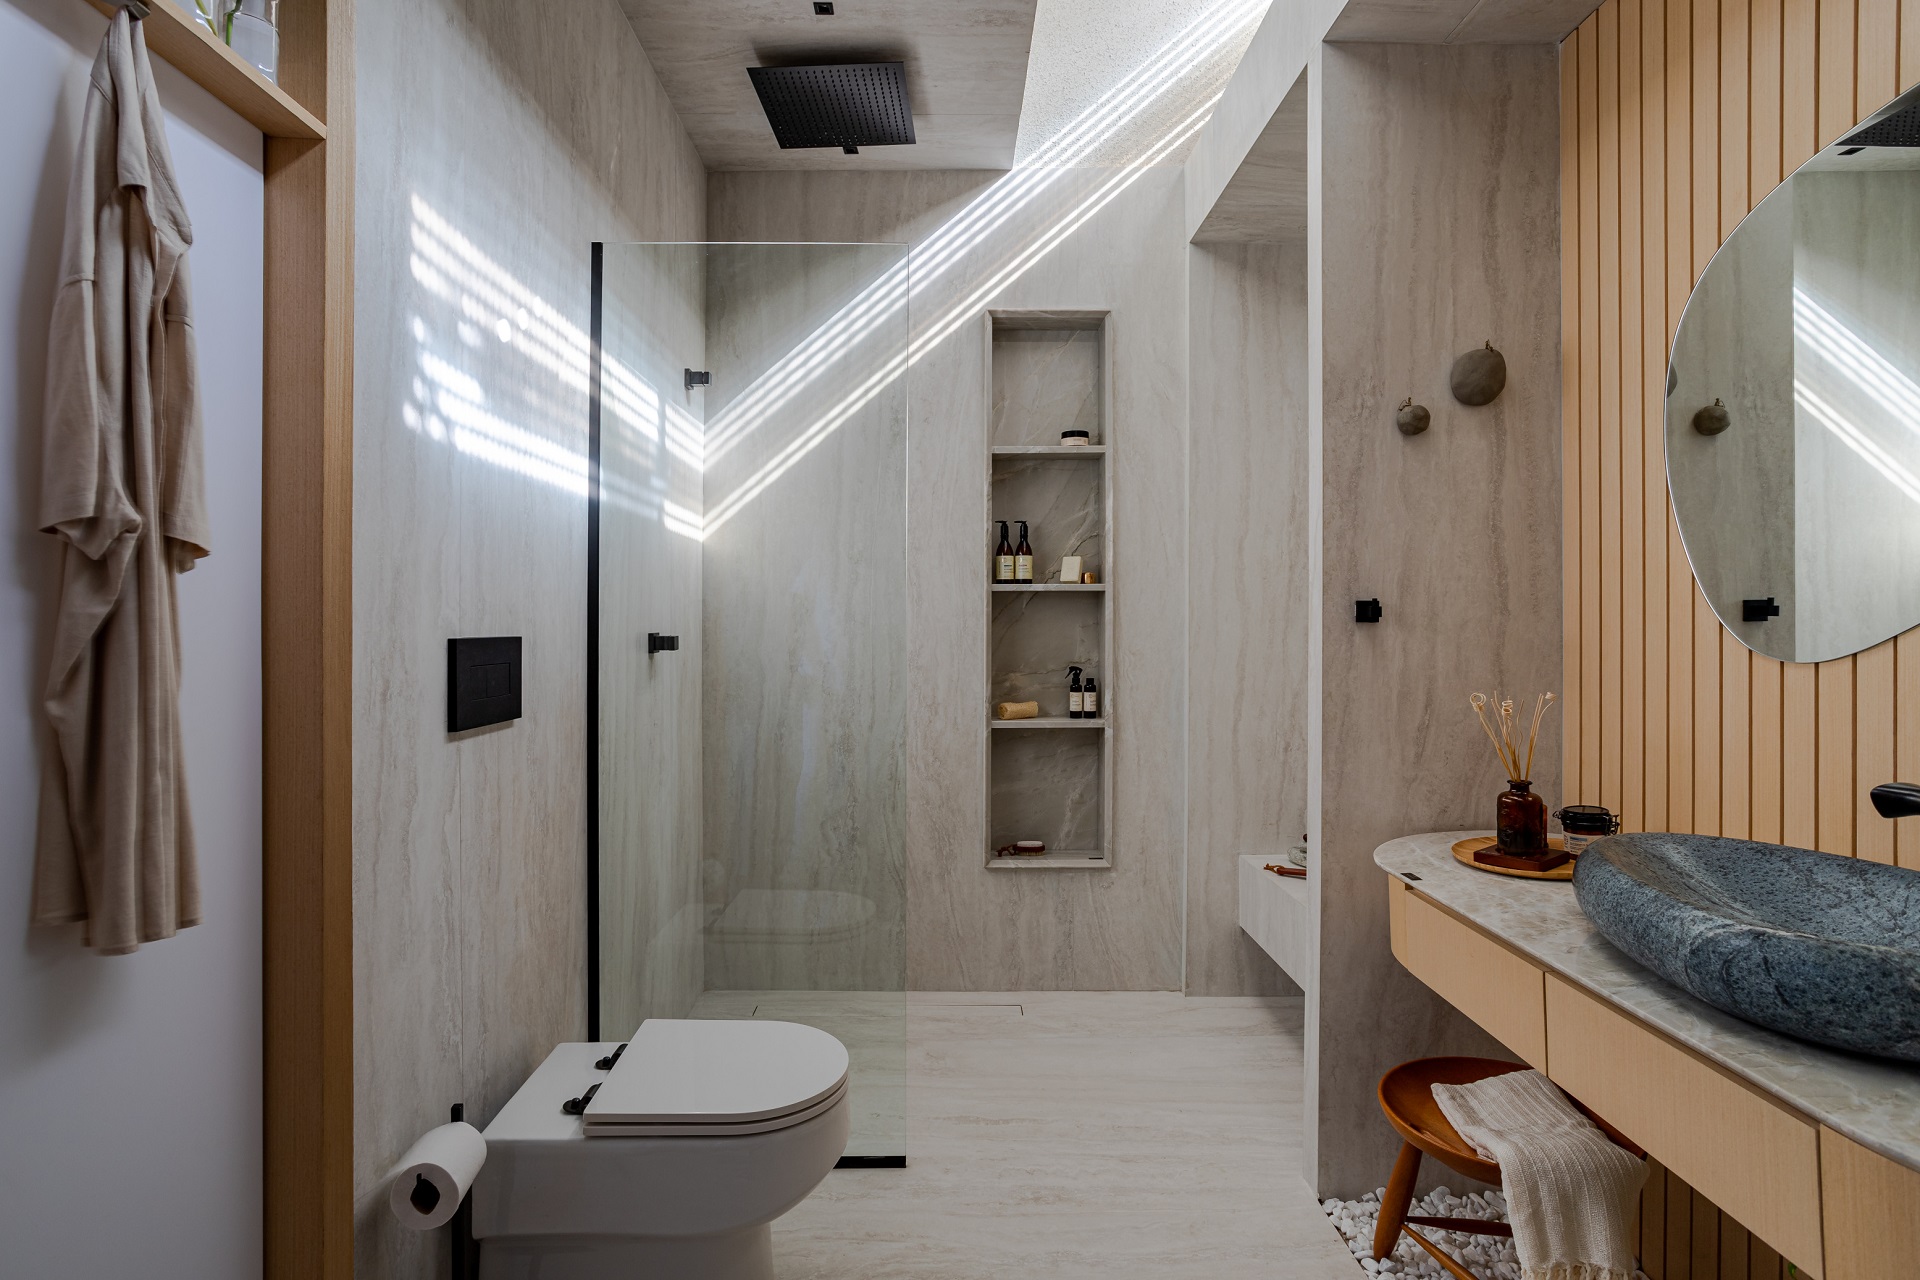 Banheiro com piso e paredes em porcelanato marmorizado claro